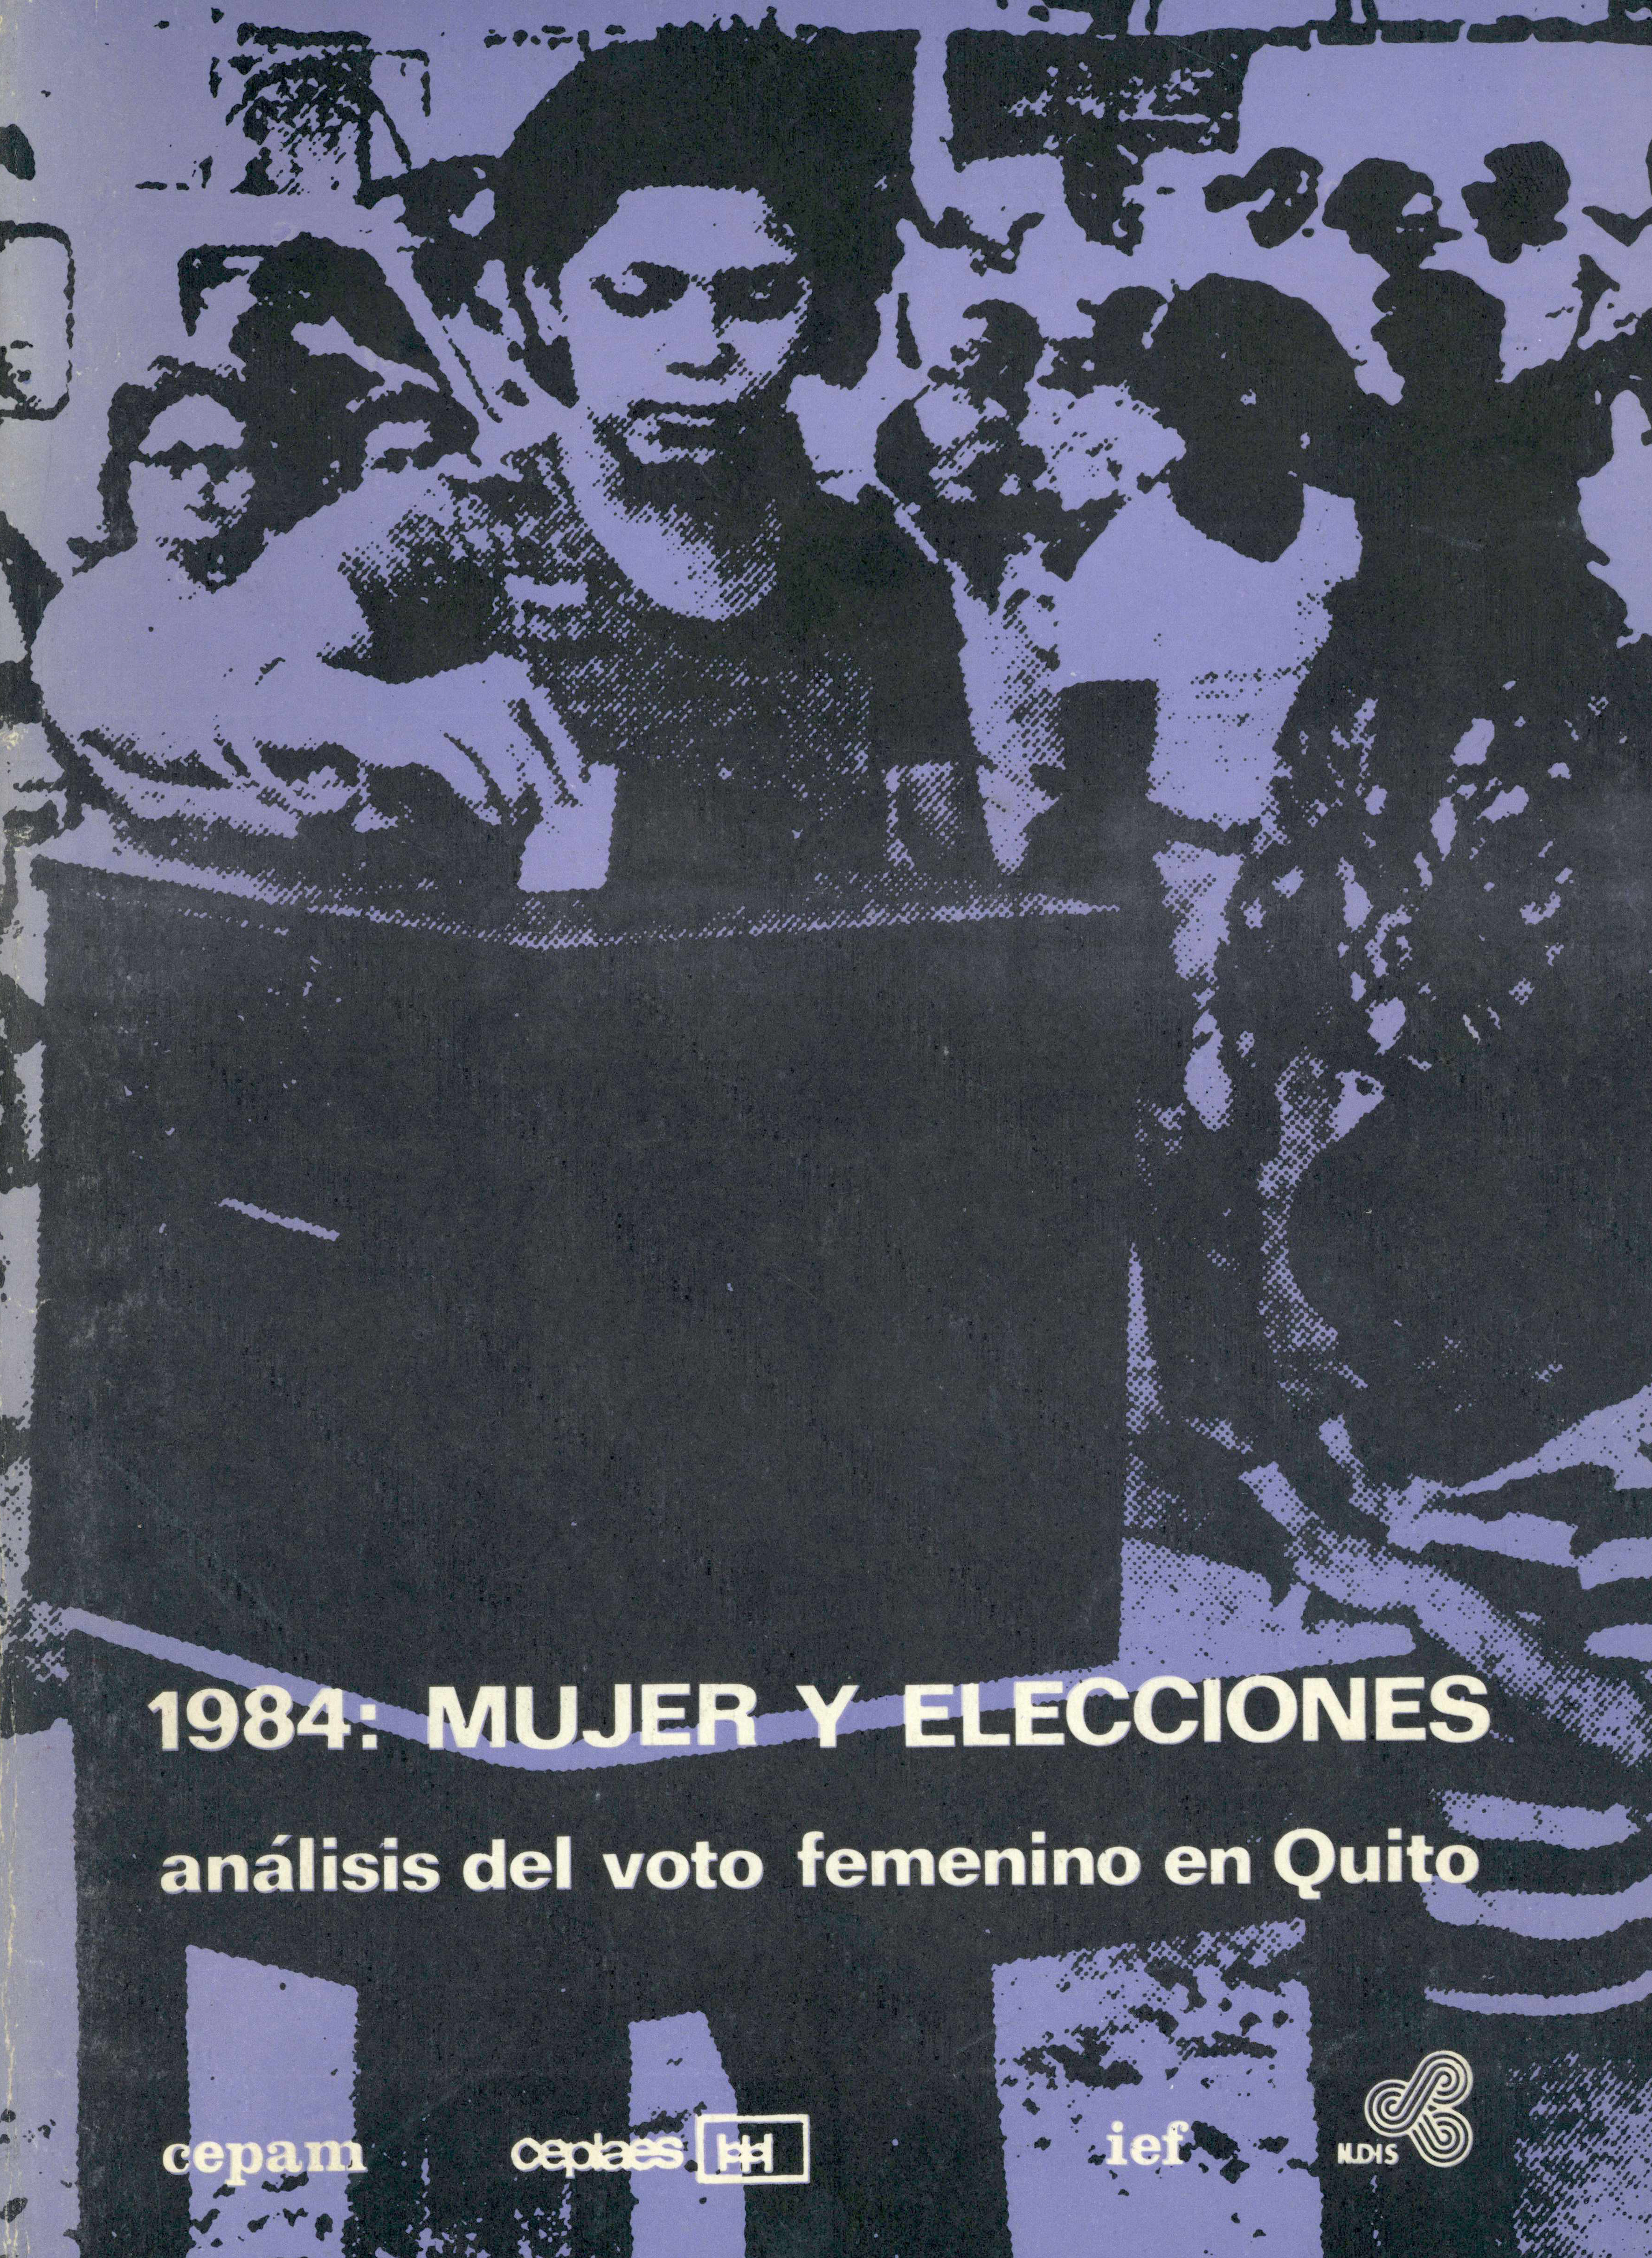 Rojo, Cecilia <br>1984: Mujer y elecciones: análisis del voto femenino en Quito<br/>Quito: ILDIS. 1984. 96 páginas 